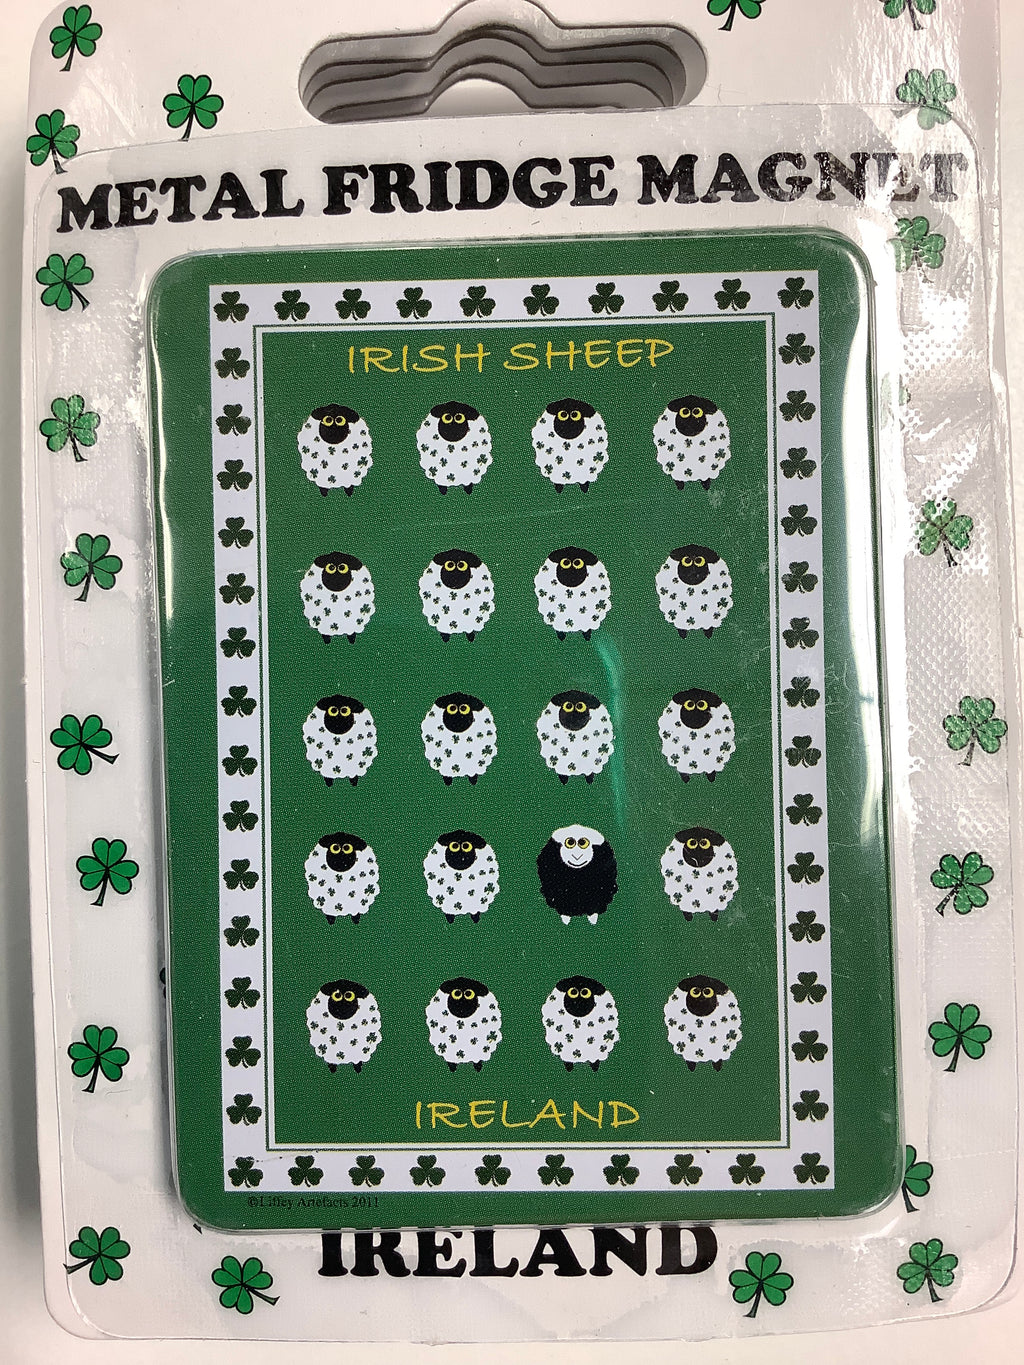 Irish sheep magnet